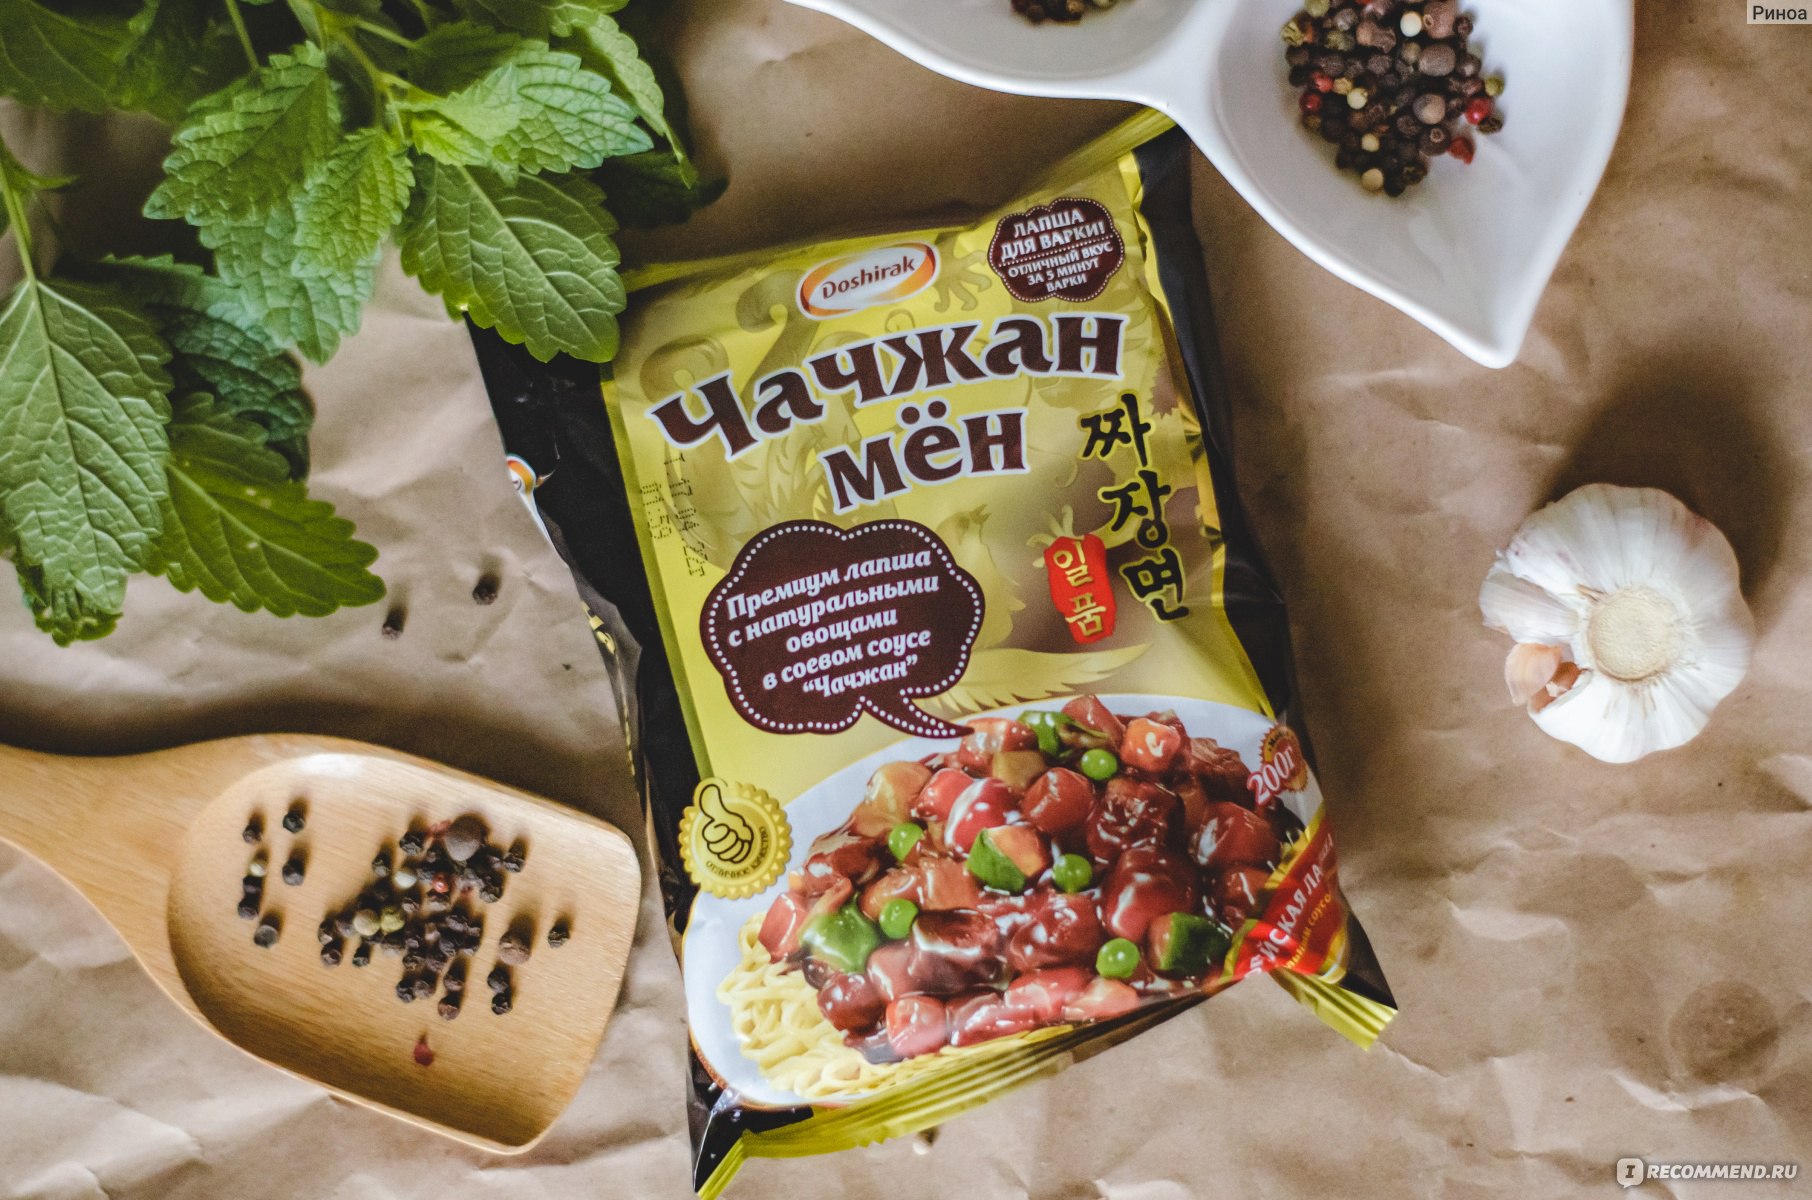 Доширак Премиум-лапша Чачжан мён с натуральными овощами и кусочками мяса в соевом соусе